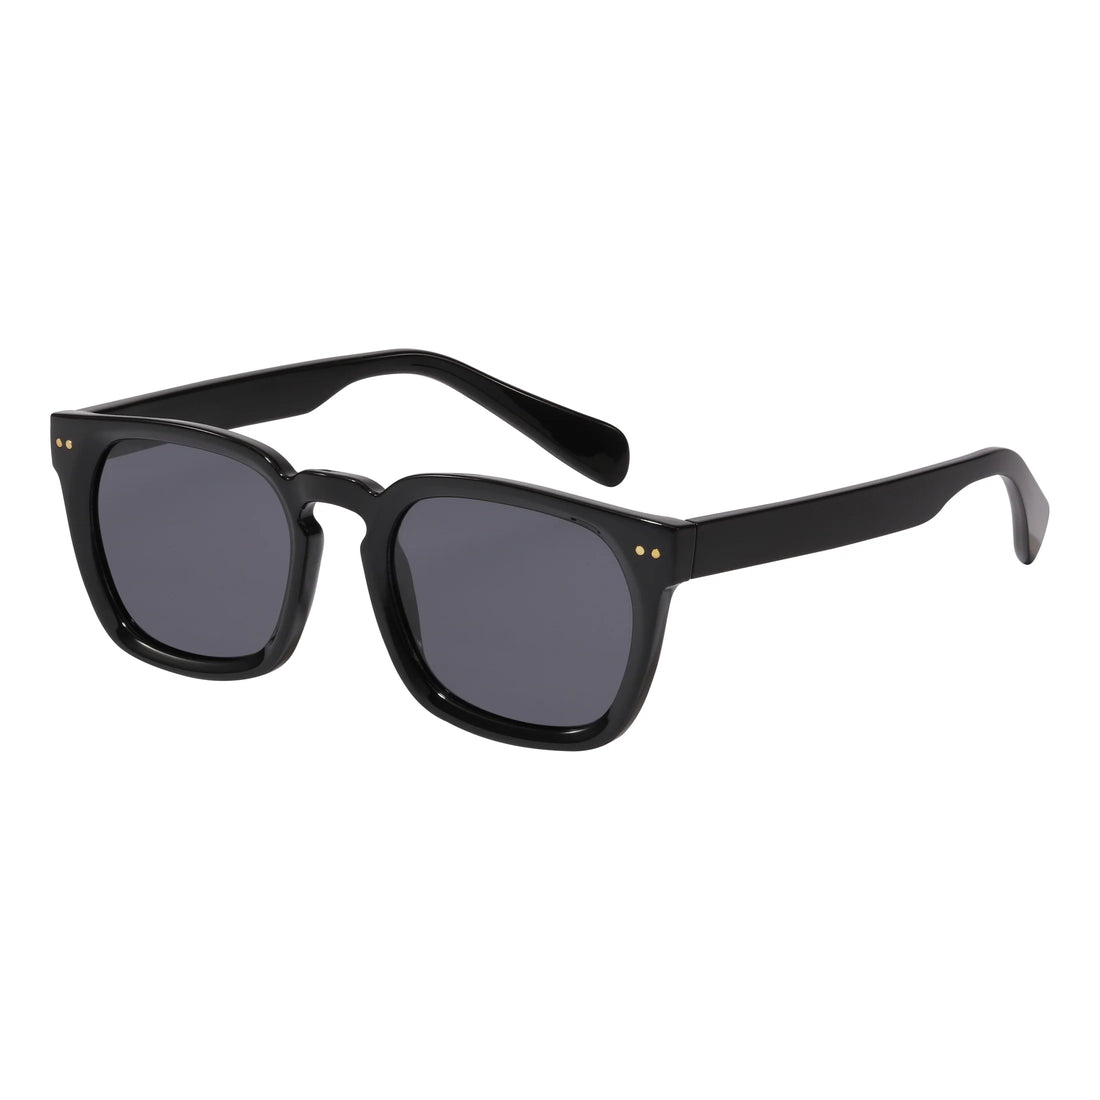 Elettra Black Sunglasses